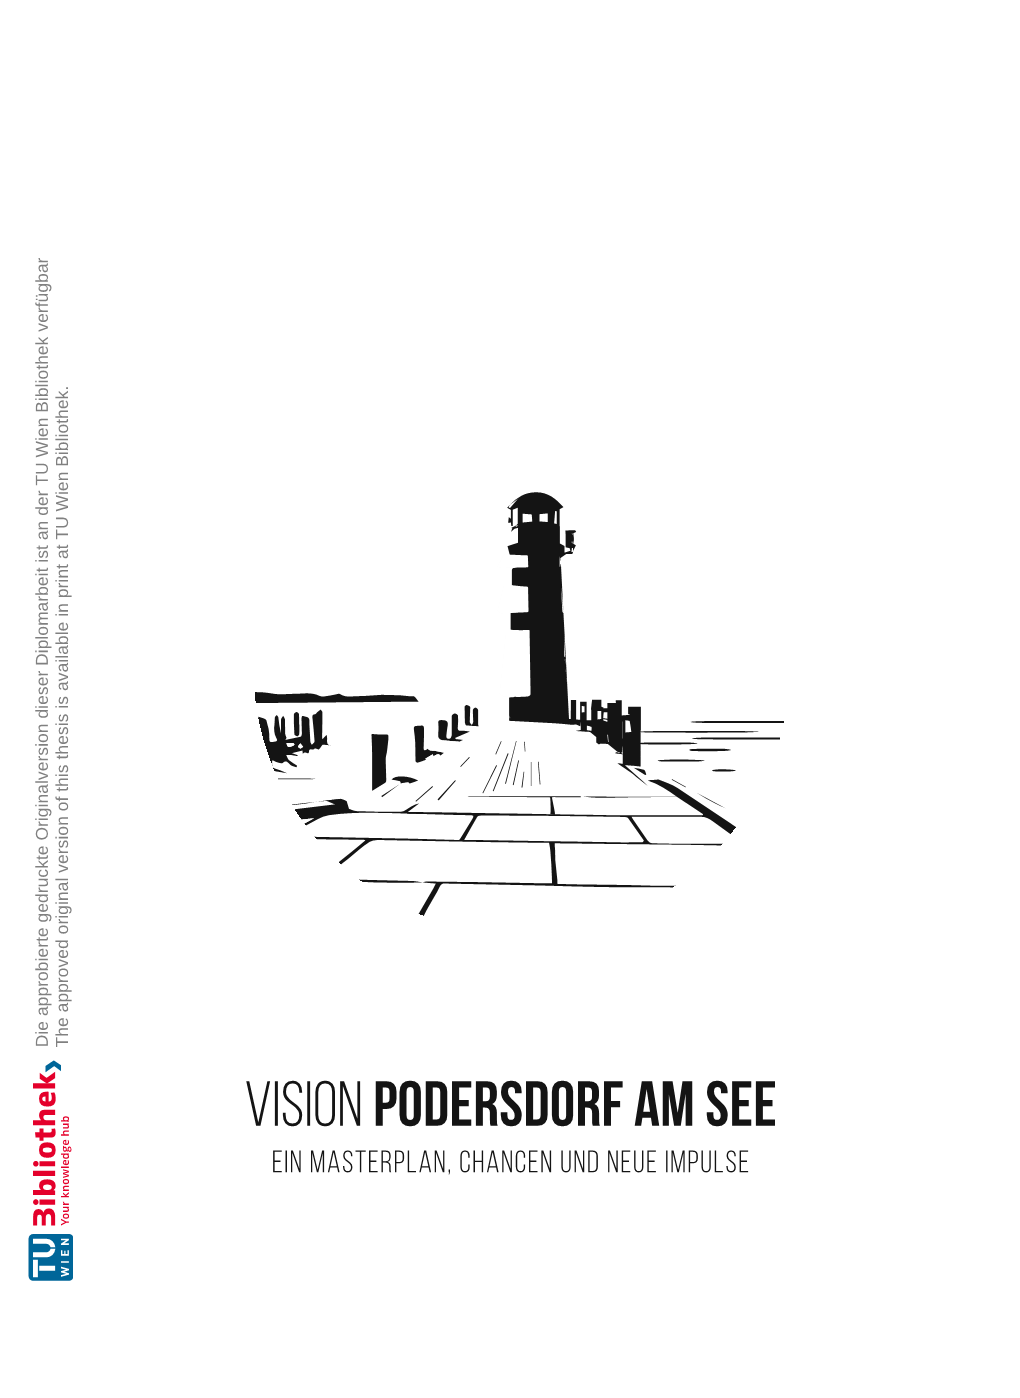 Vision Podersdorf Am See Ein Masterplan, Chancen Und Neue Impulse DIPLOMARBEIT